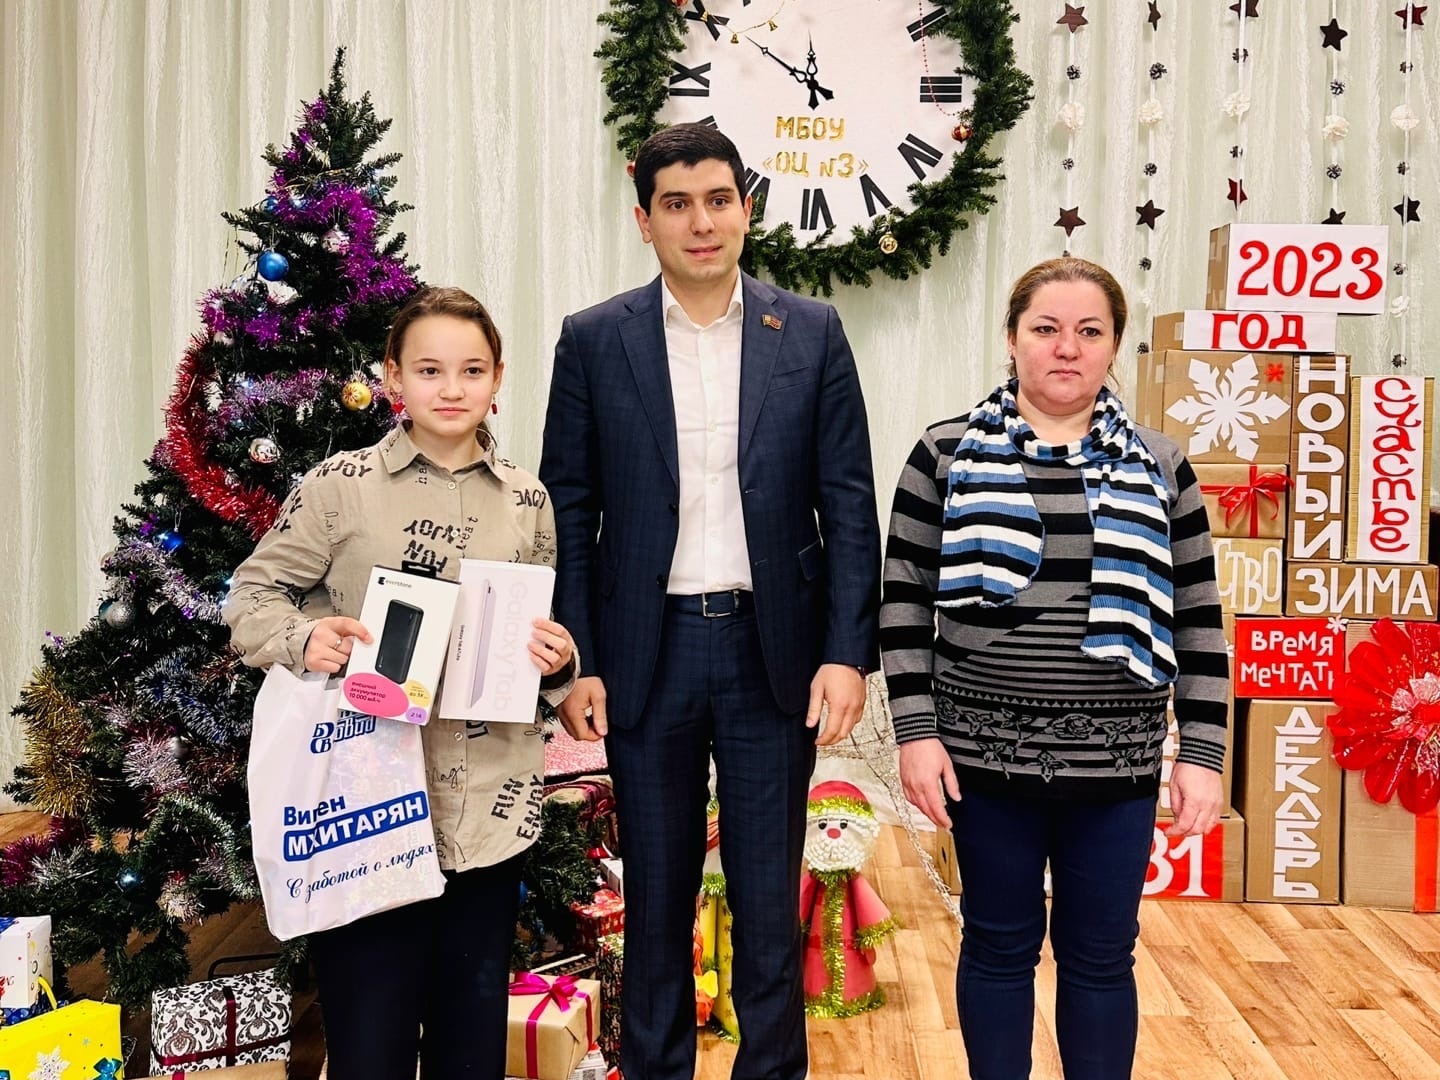 Депутат Челябинской городской Думы Виген Мхитарян исполнил желания двух детей